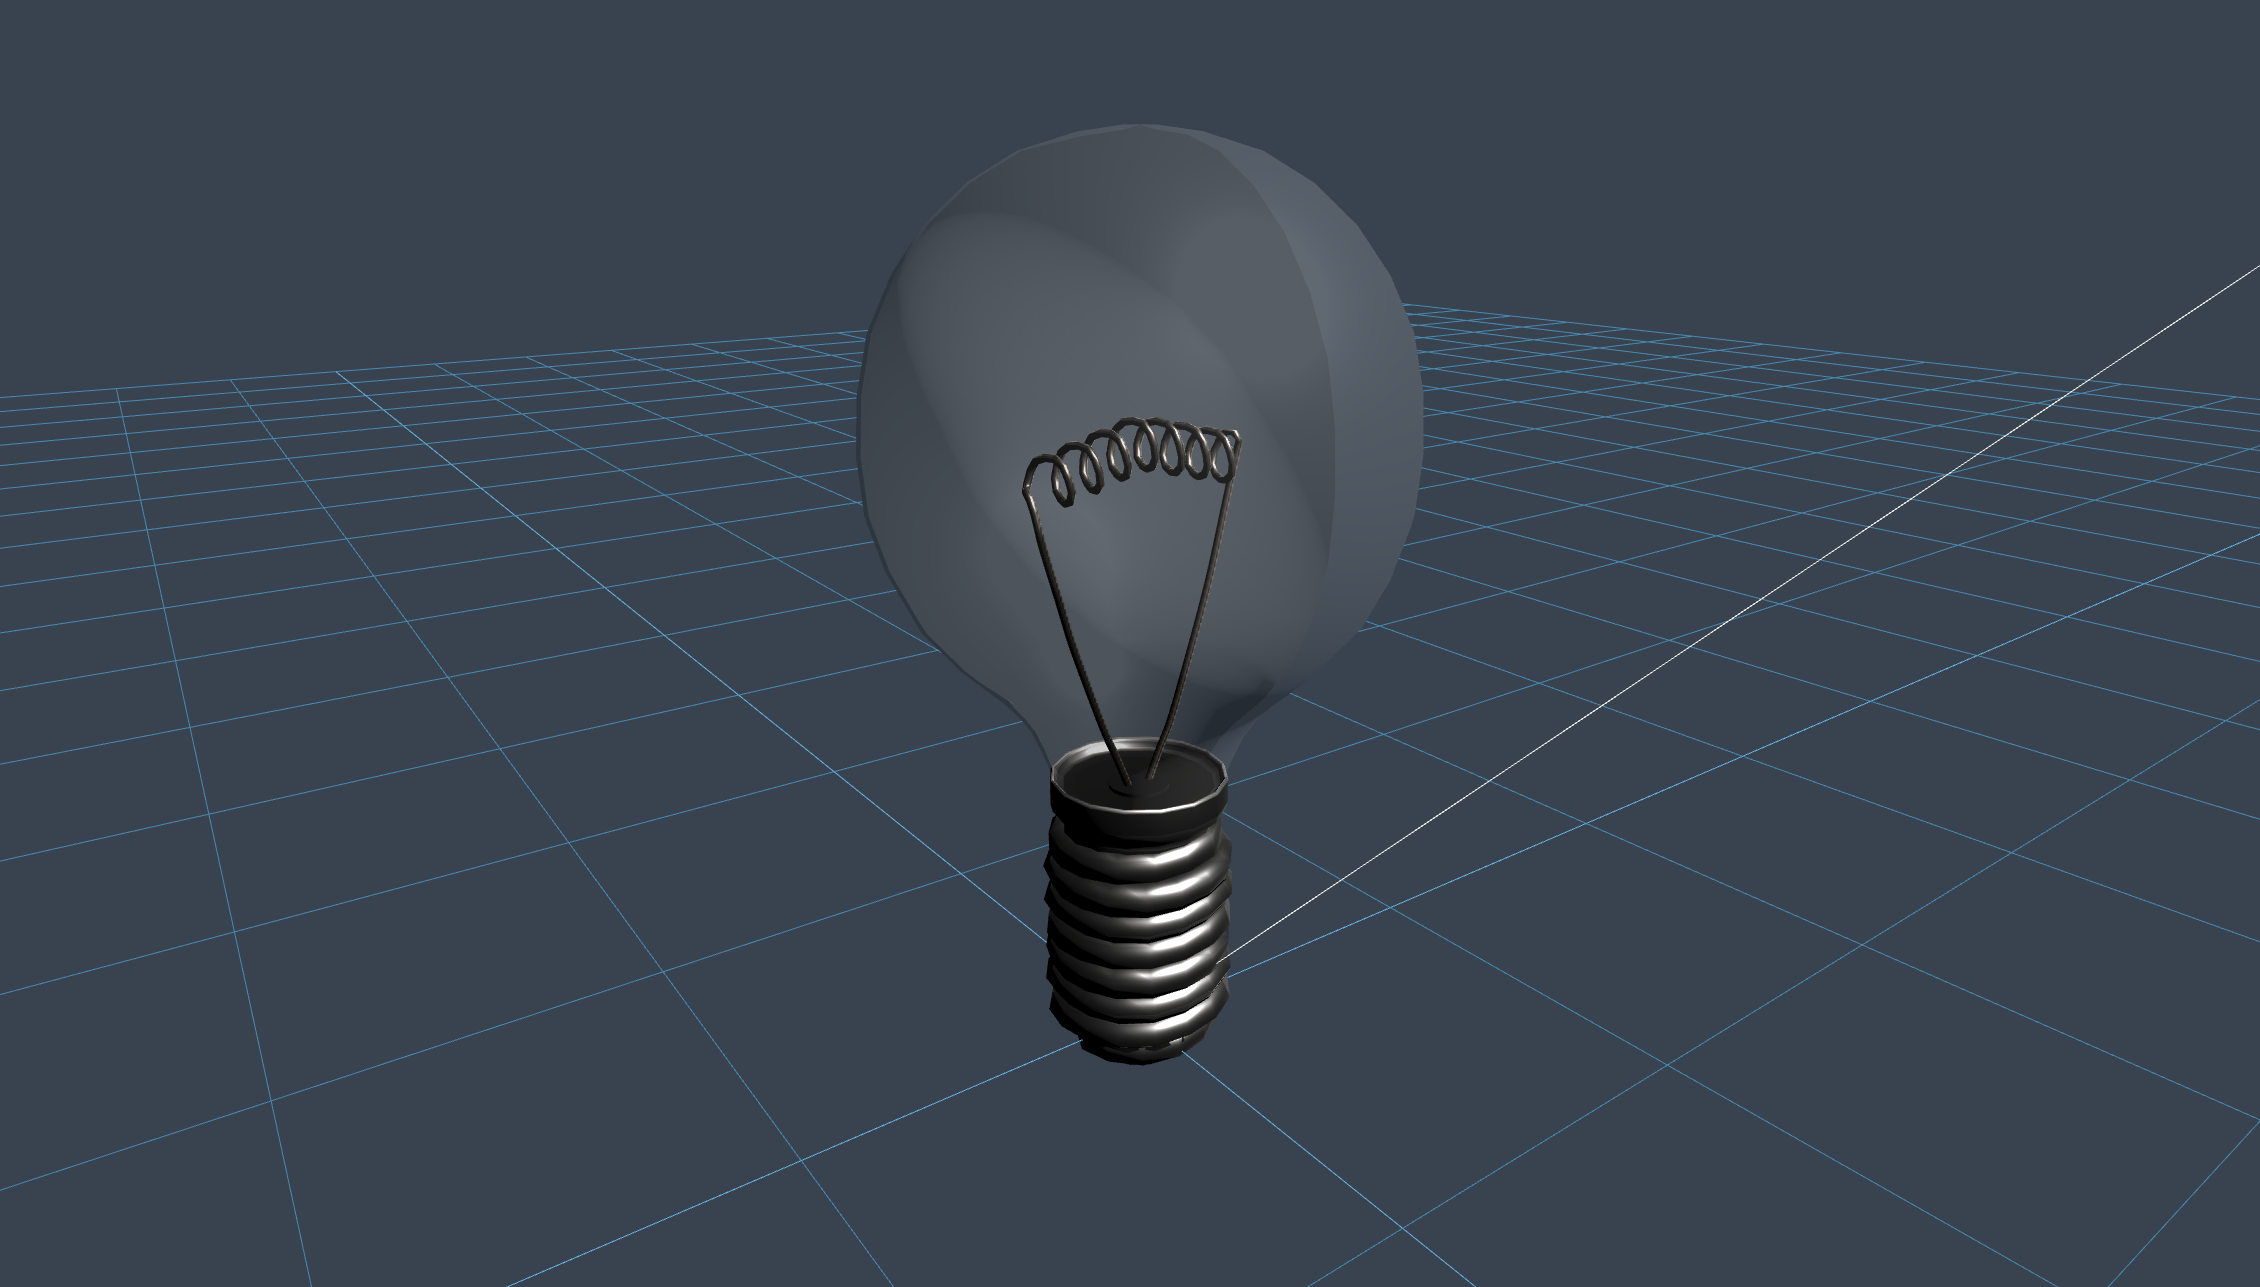 LightBulb - creado por Niilo Korppi con 3D